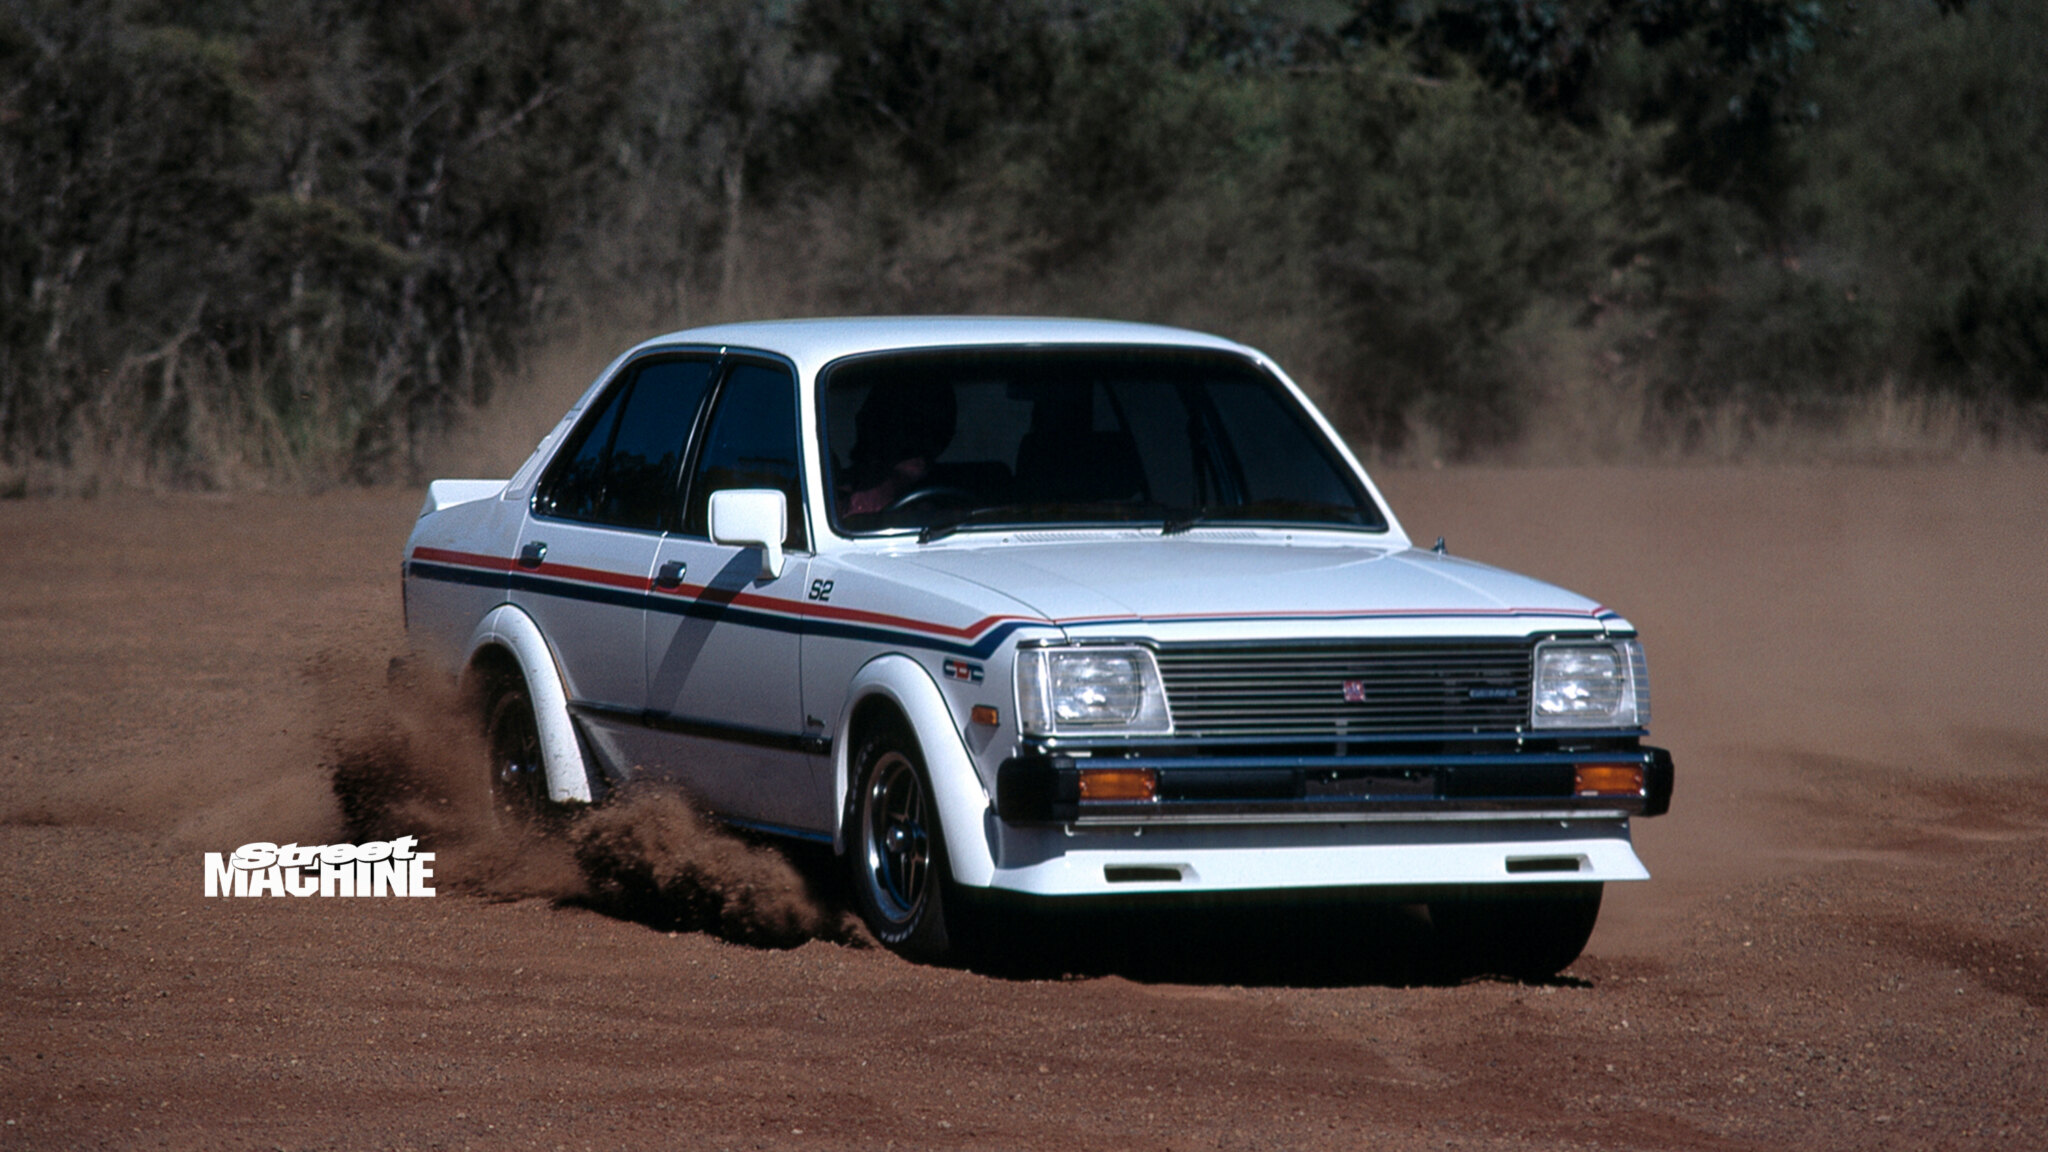 Road test: Country Dealer Team (CDT) Holden Gemini